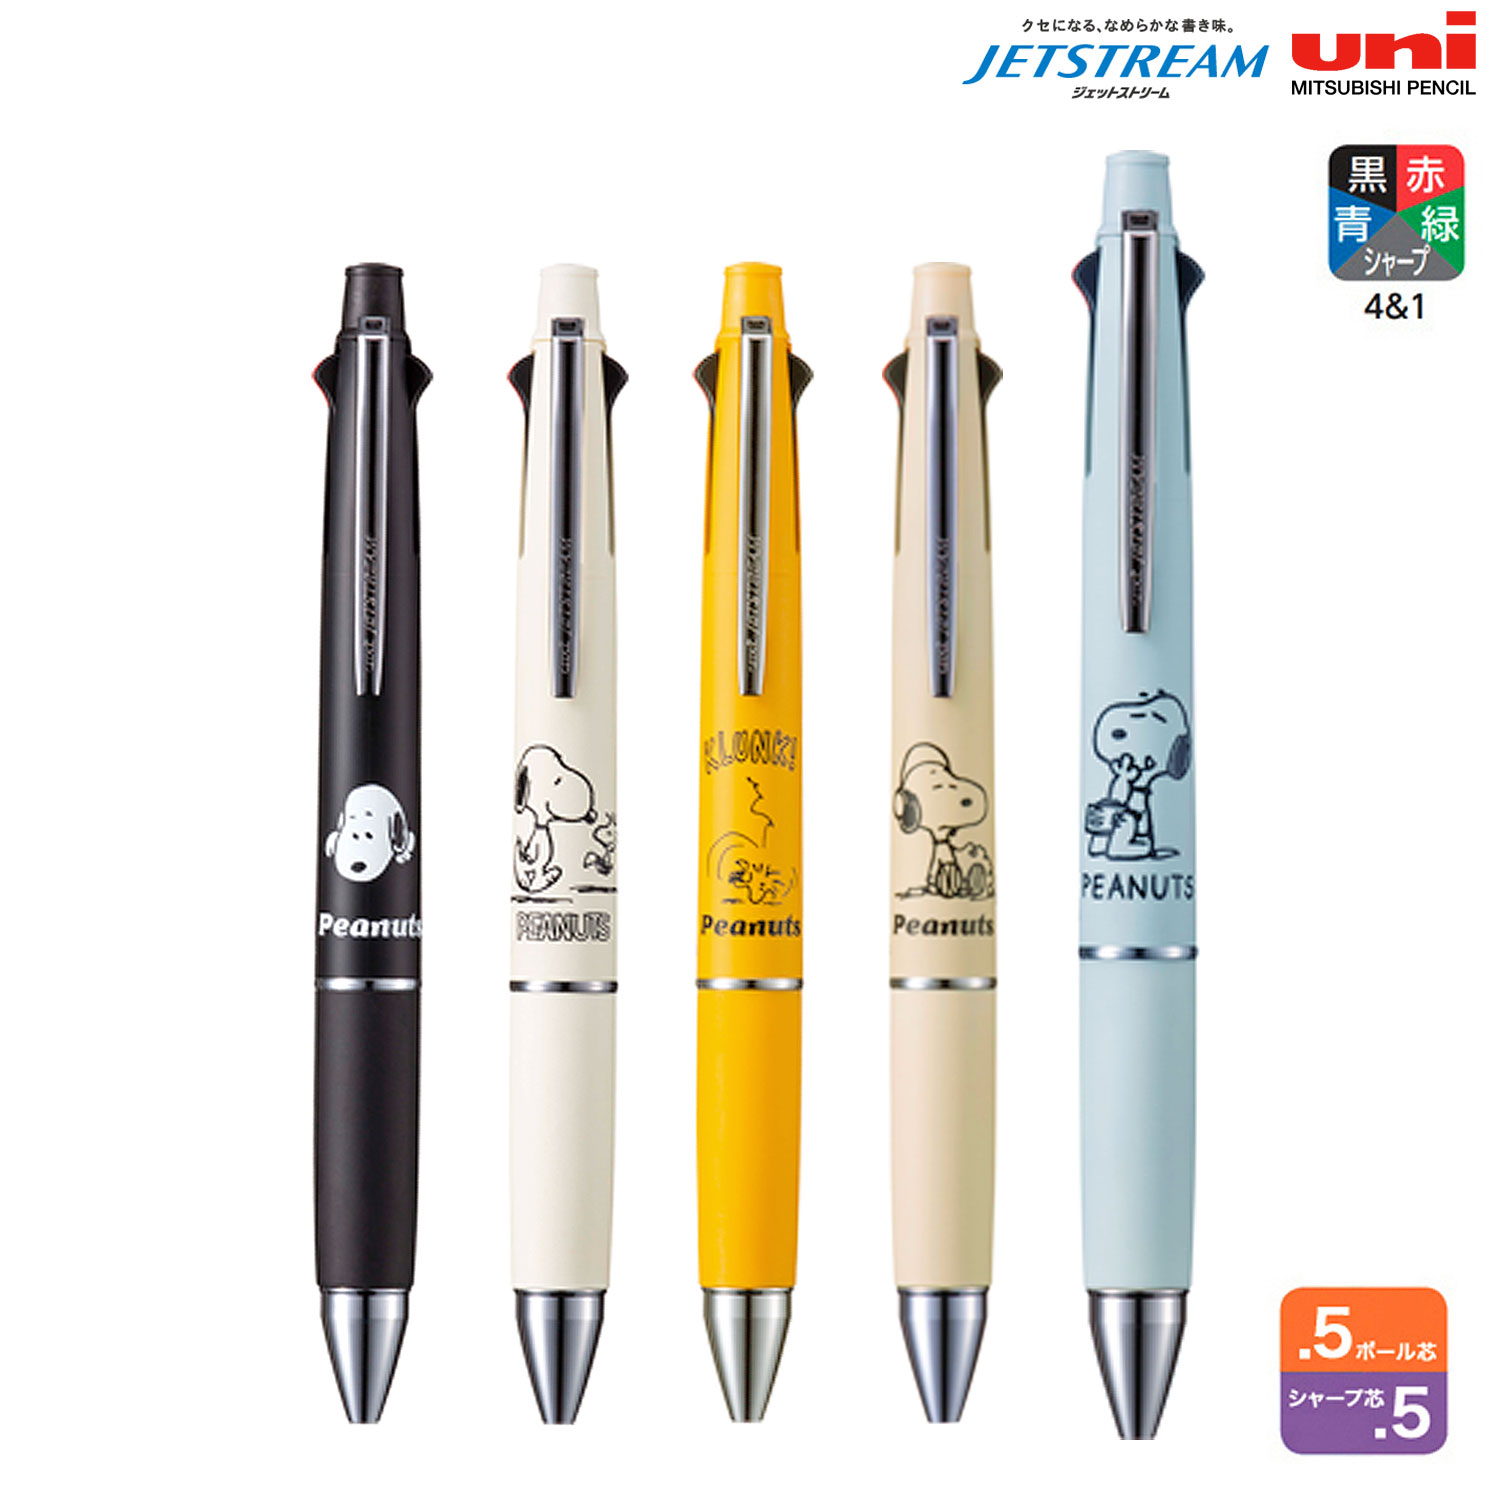  Mitsubishi карандаш uni jet Stream многофункциональный авторучка 4&1 0.5 Peanuts Snoopy MSXE5-1600PN-05 все 5 цвет из выбор 